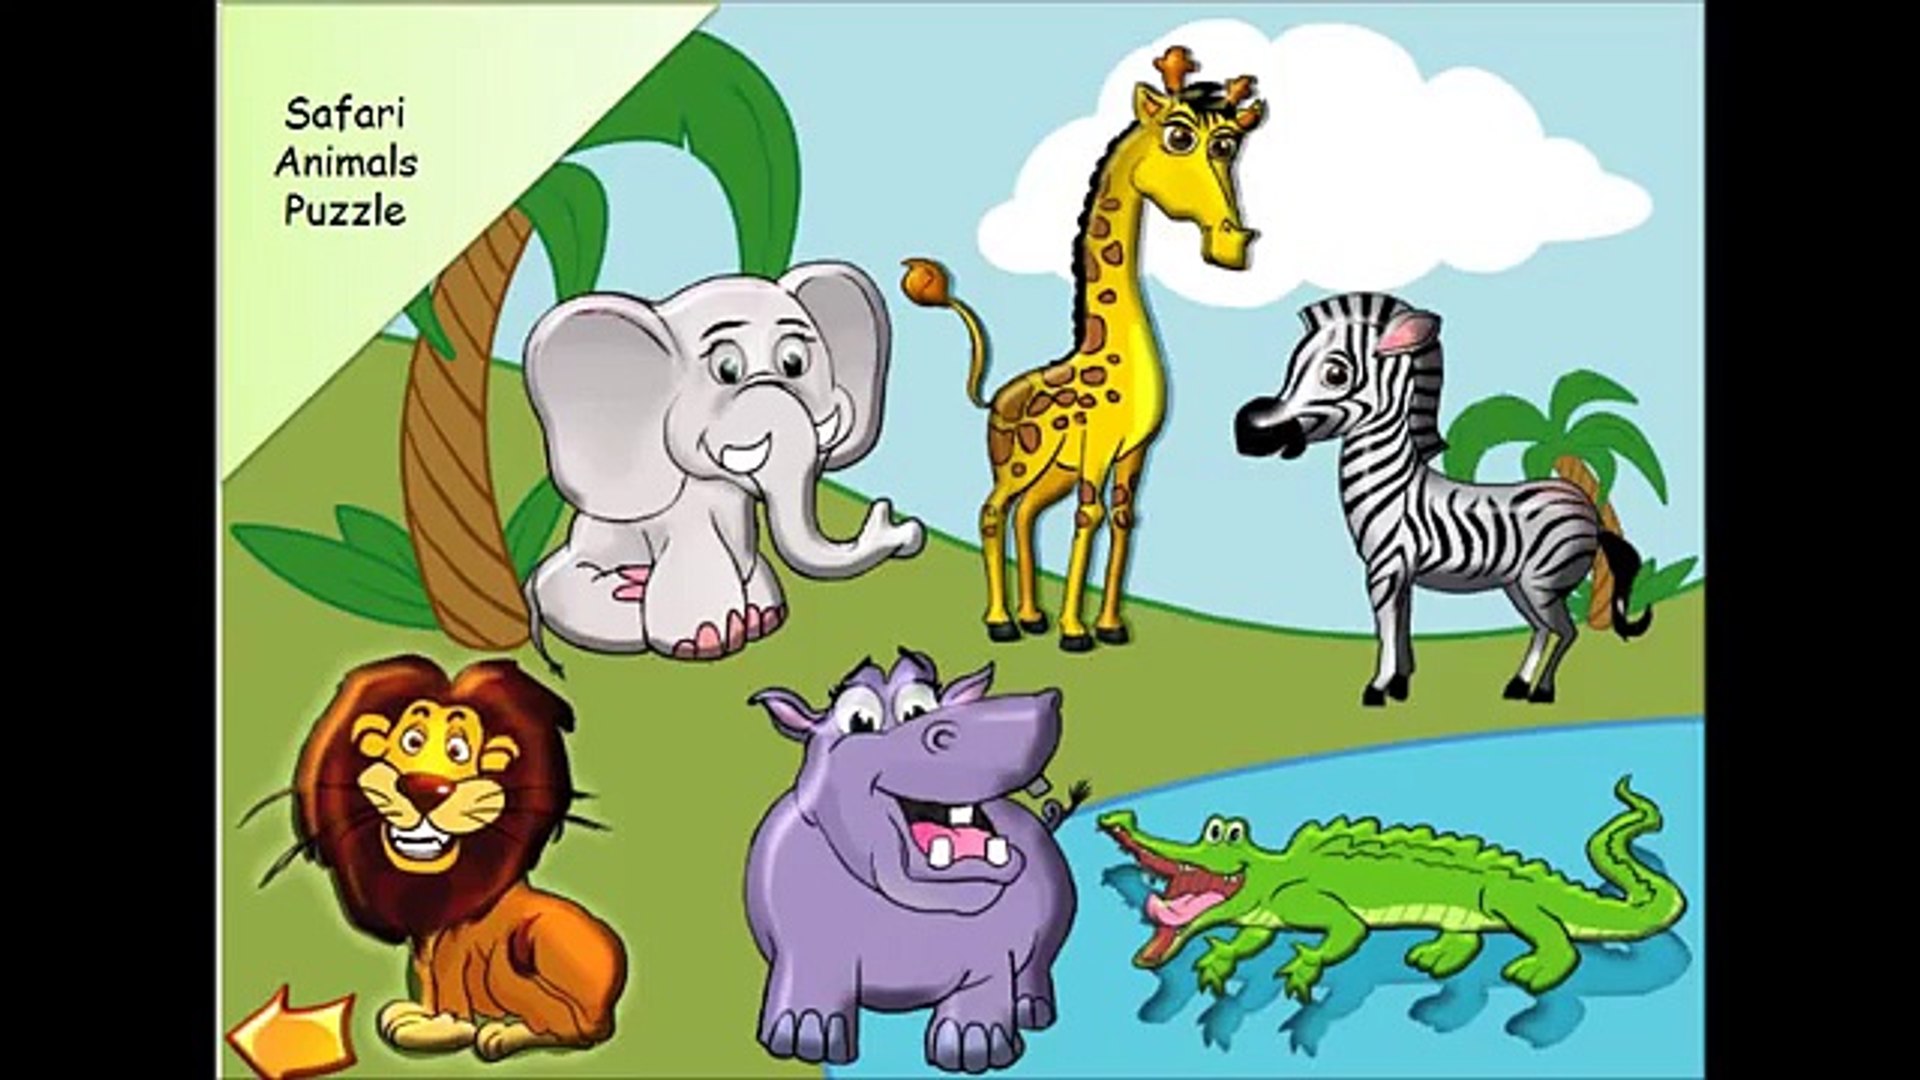 Животное для ребенка 9 лет. Животные Африки. Животные Африки для детей. Изображения животных для детей. Животные Африки дл ядетй.